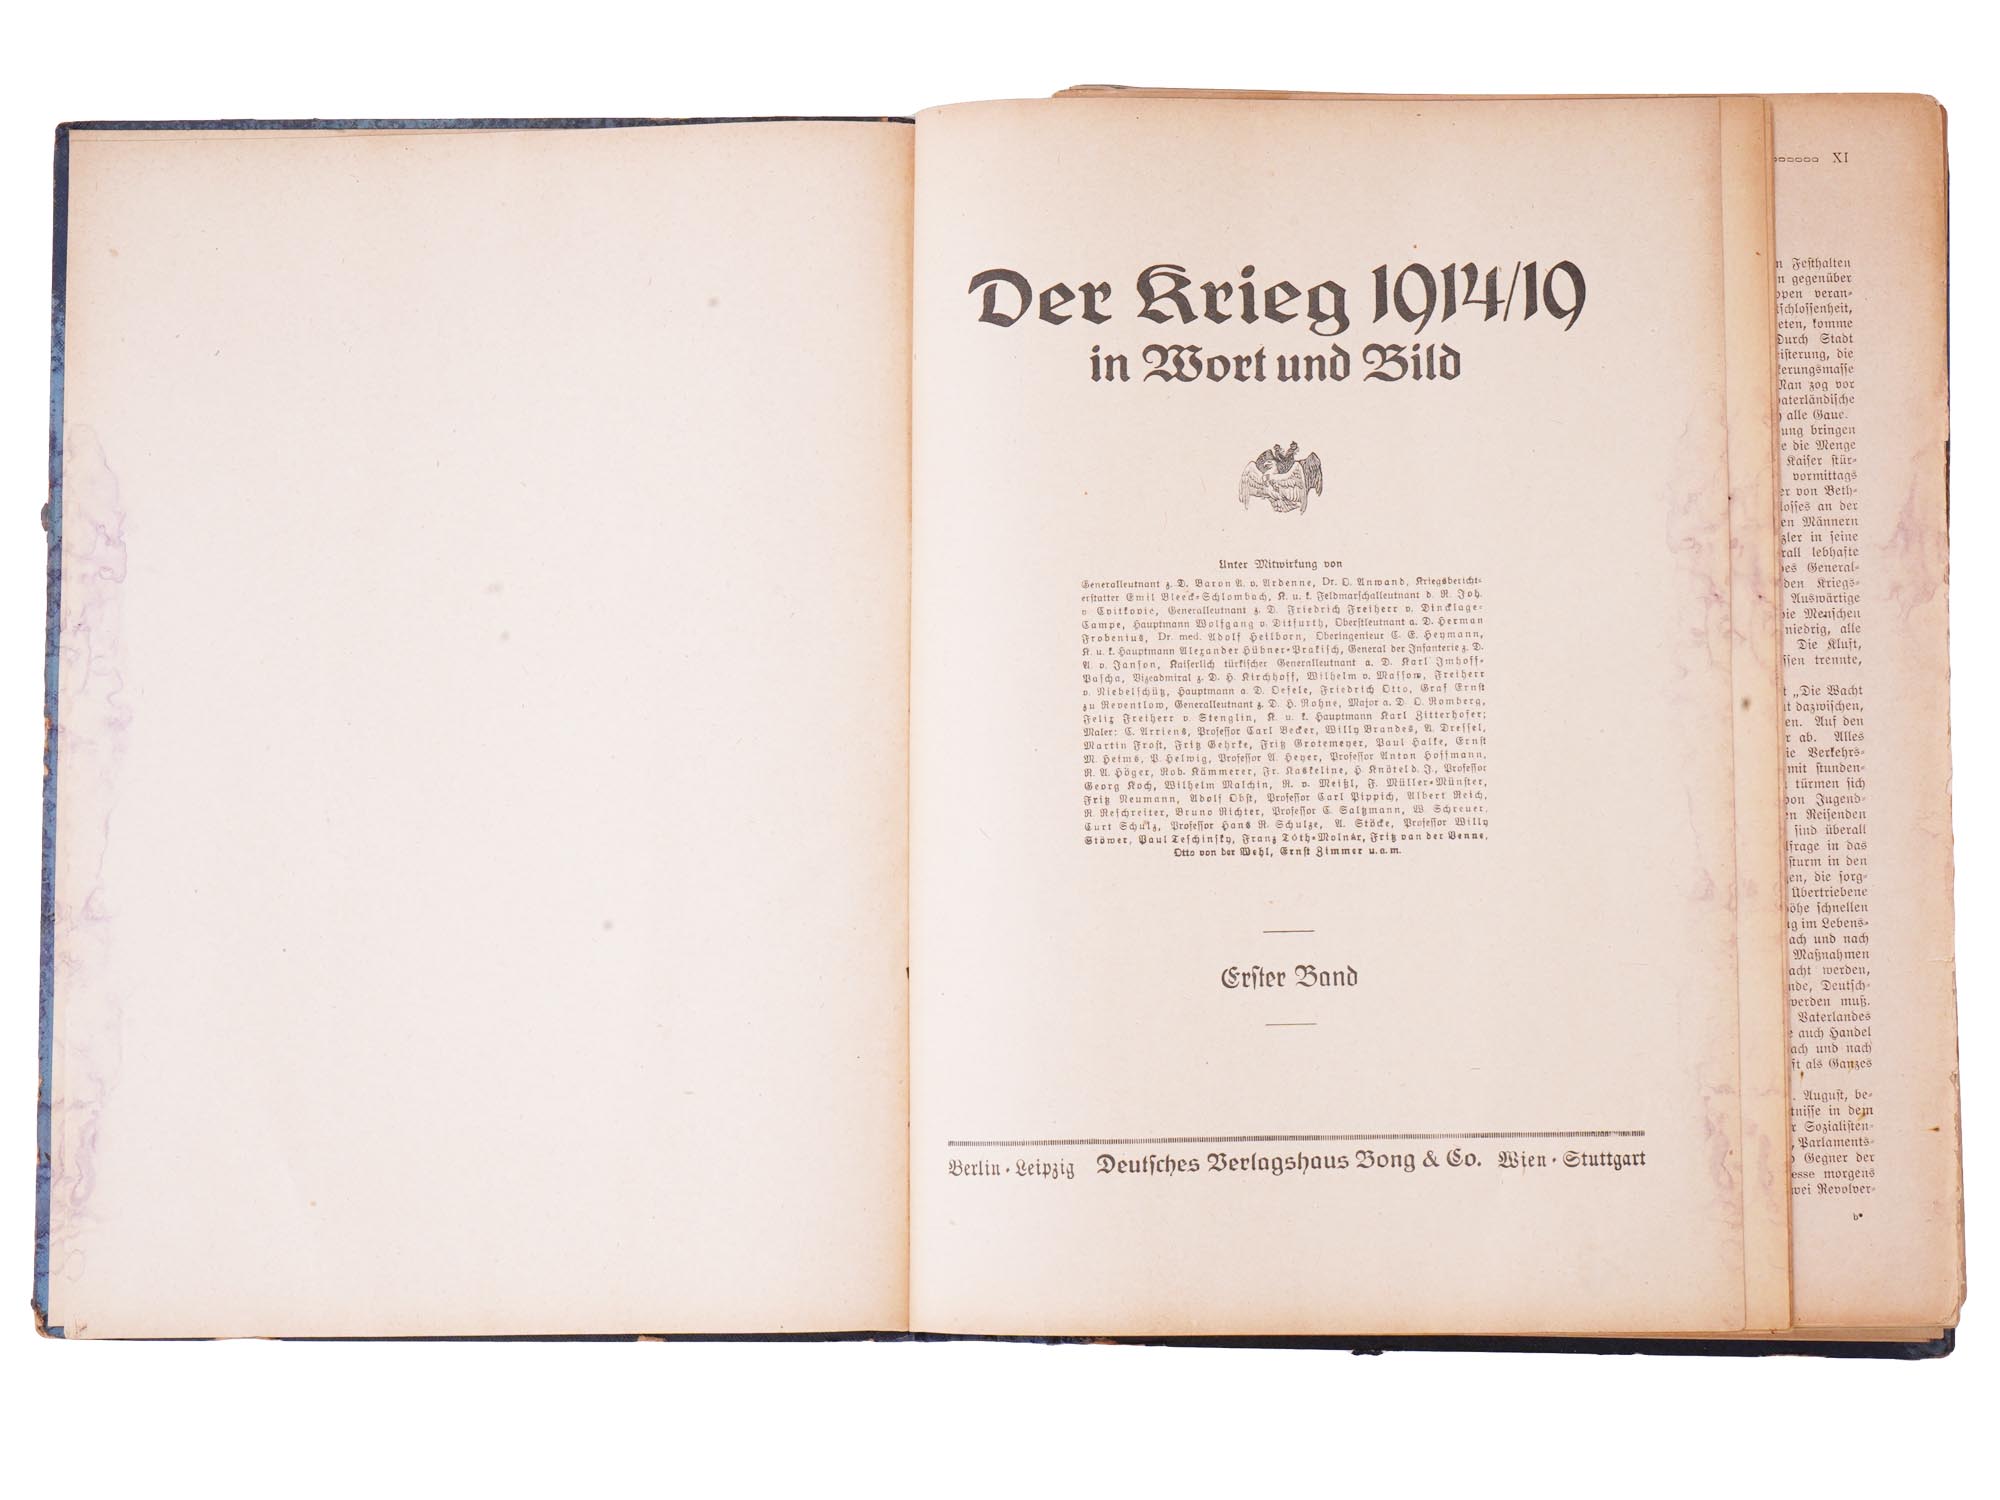 WWI GERMAN BOOK DER KRIEG IN WORT UND BILD VOL 1 PIC-4